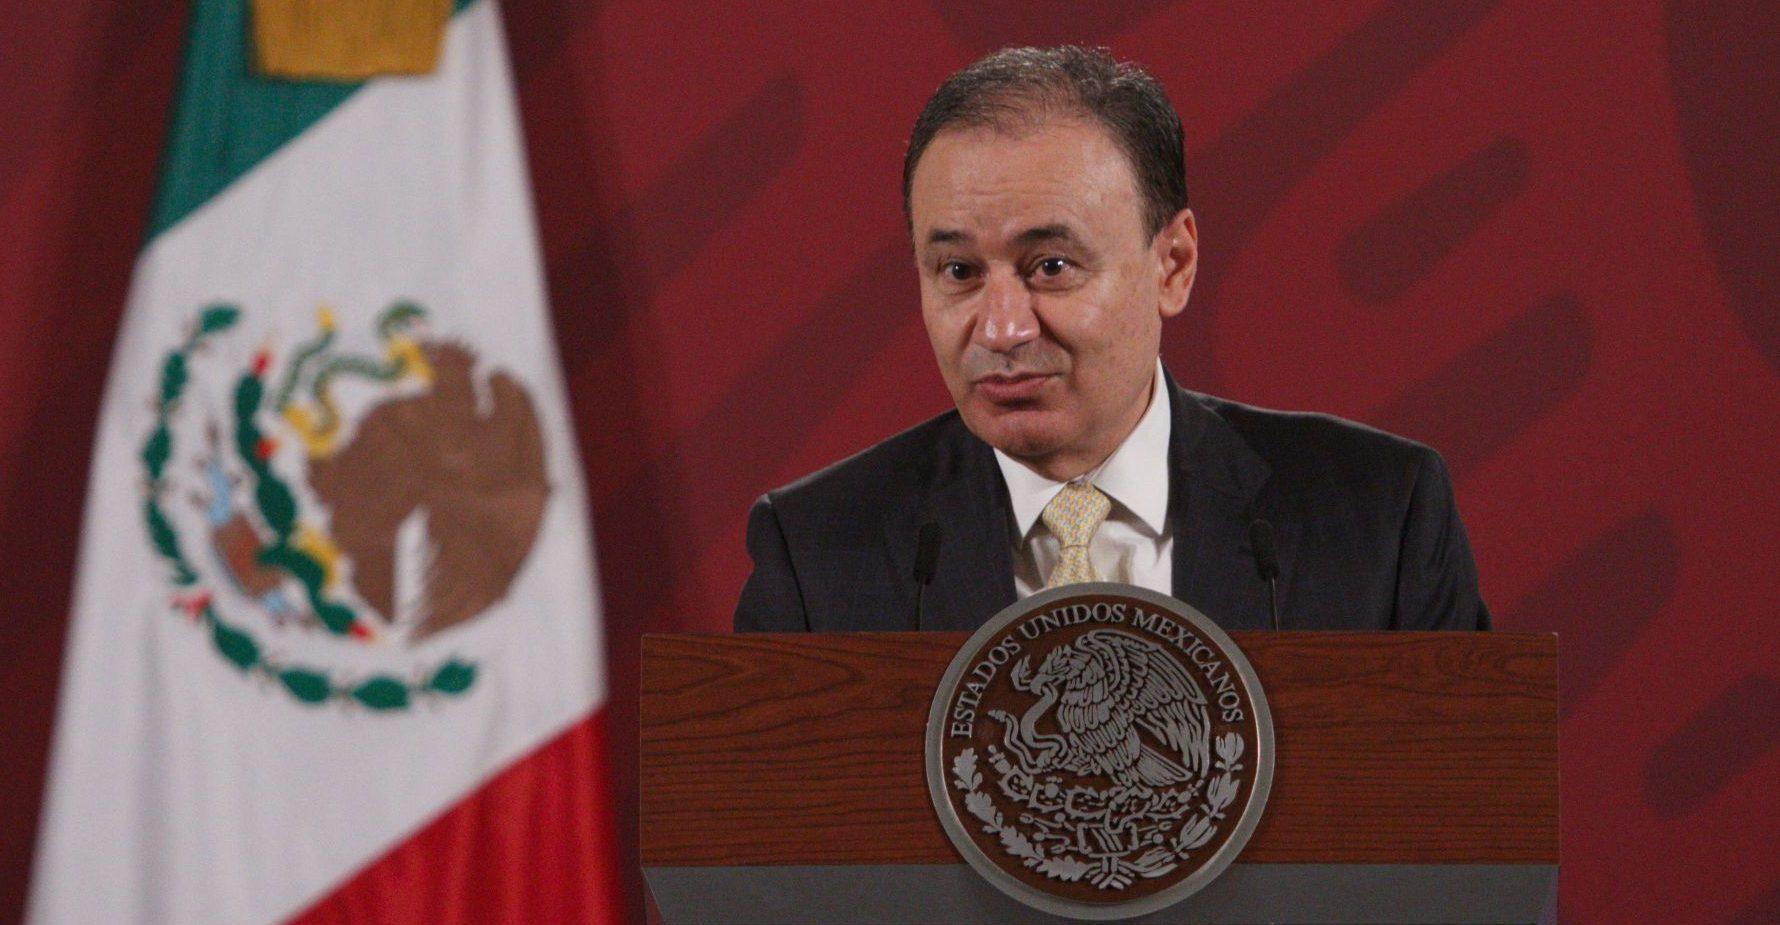 En renuncia, Alfonso Durazo resalta logros pero acepta rezago en homicidios